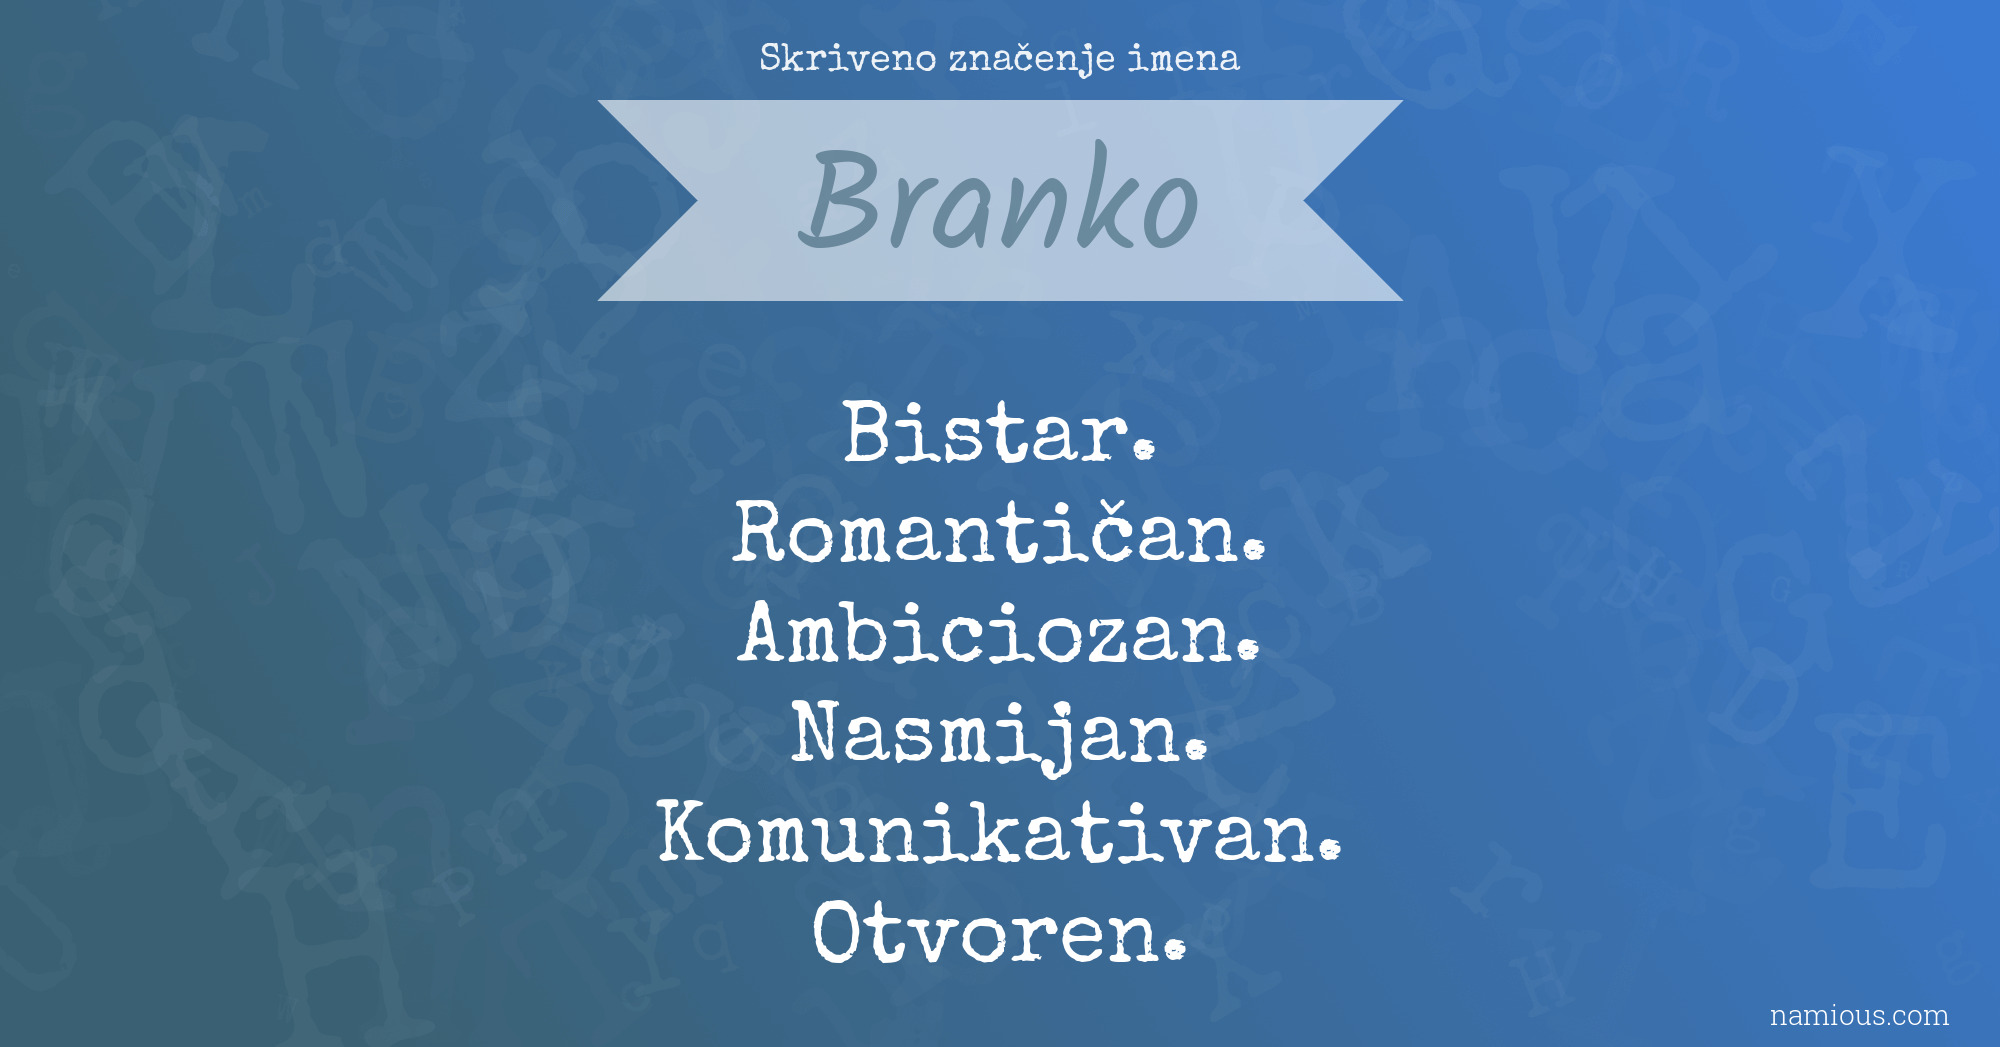 Skriveno značenje imena Branko